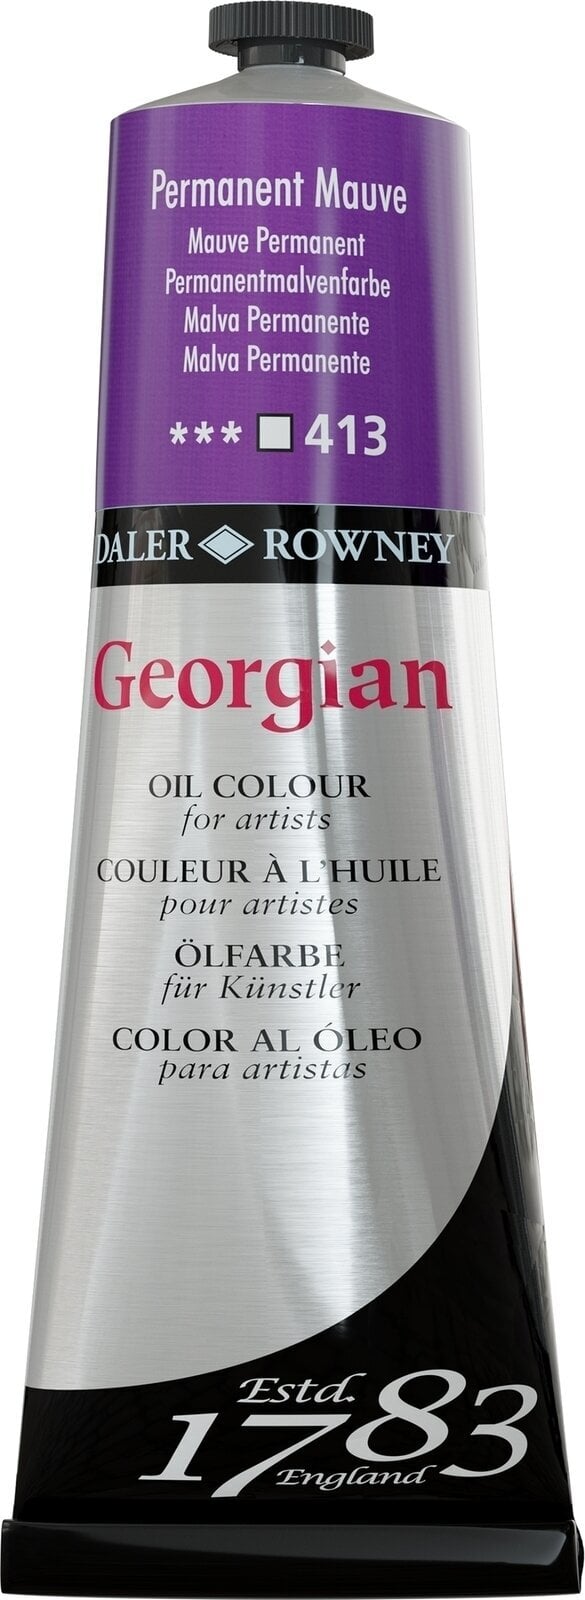 Tempera ad olio Daler Rowney Georgian Pittura a olio Permanent Mauve 225 ml 1 pz